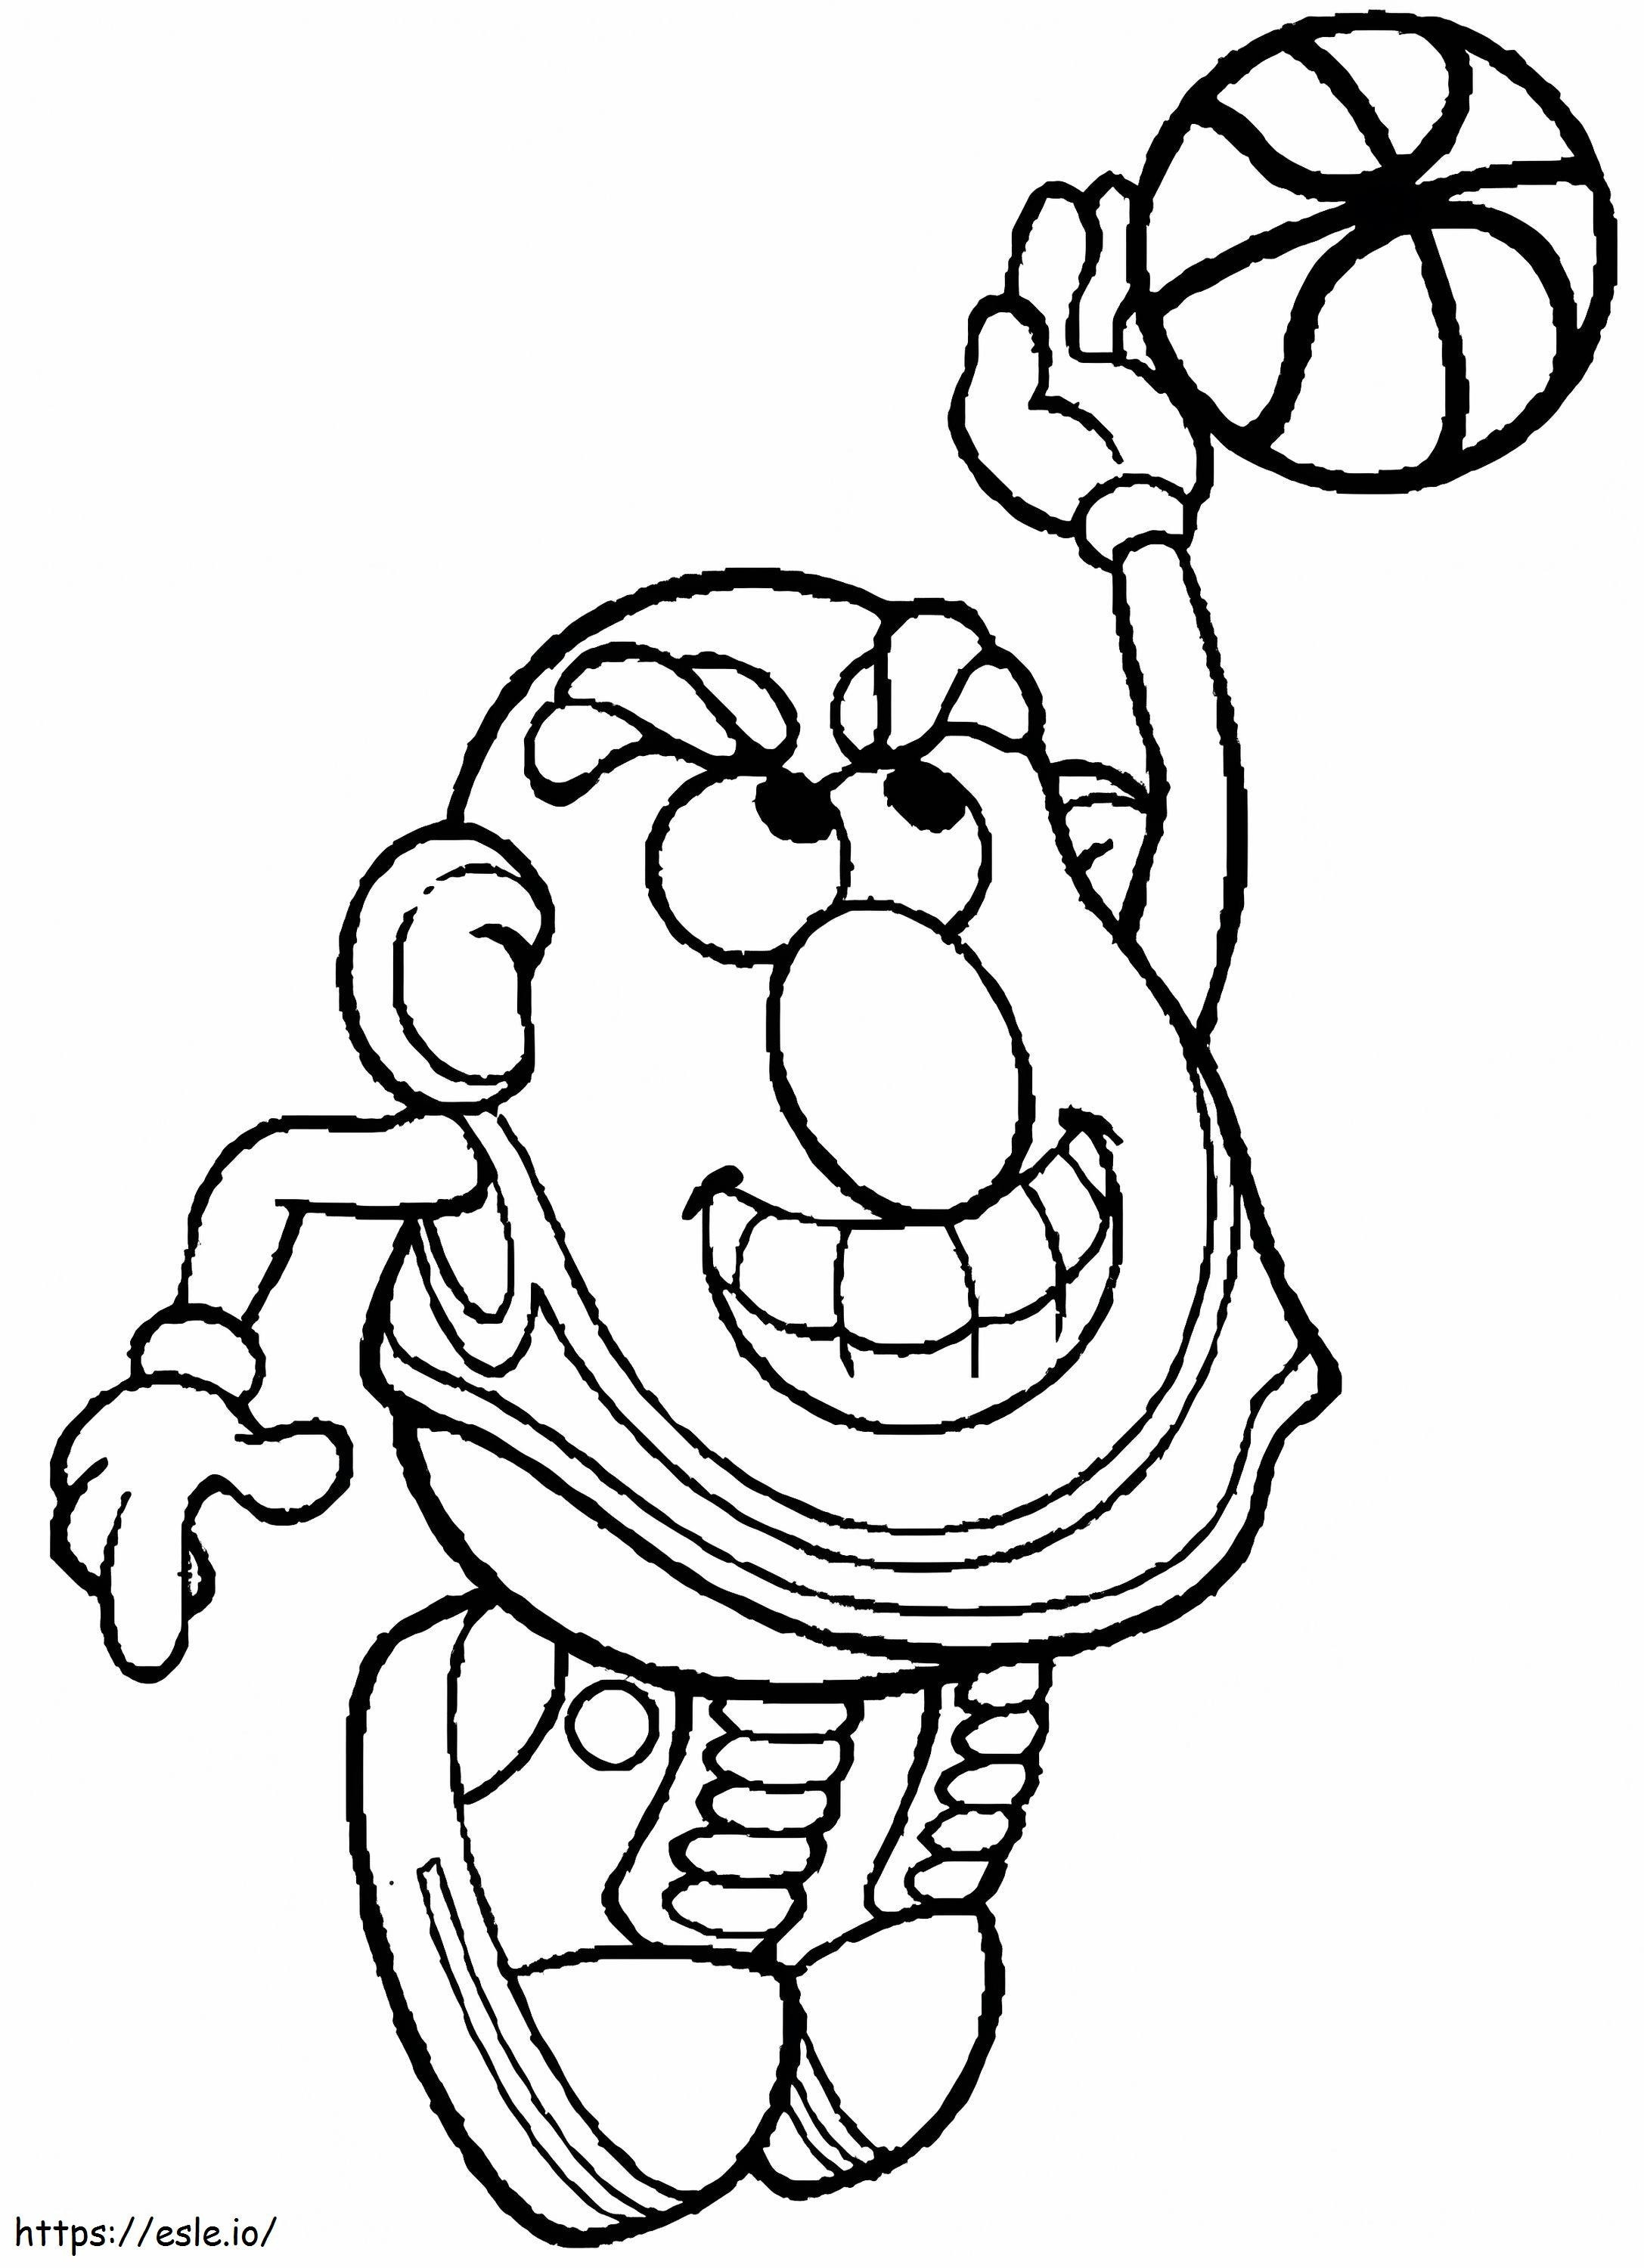 Mr. Potato Head jugando al baloncesto para colorear